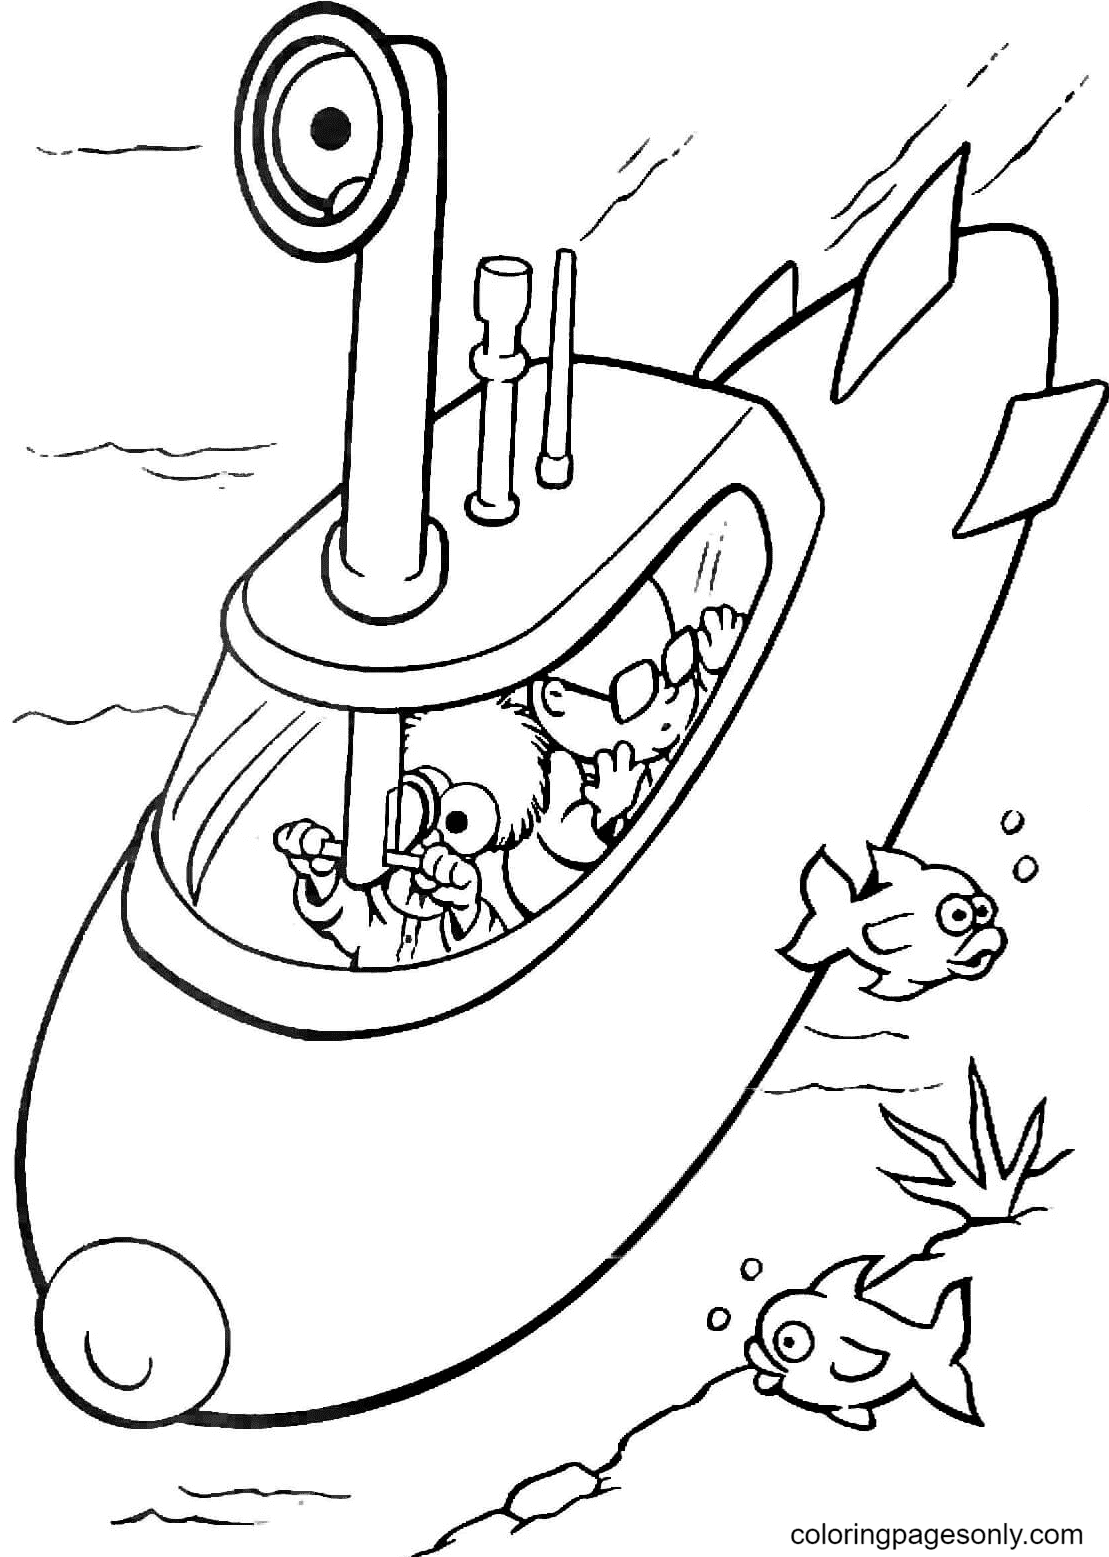 布偶婴儿中的烧杯和本生在潜艇上